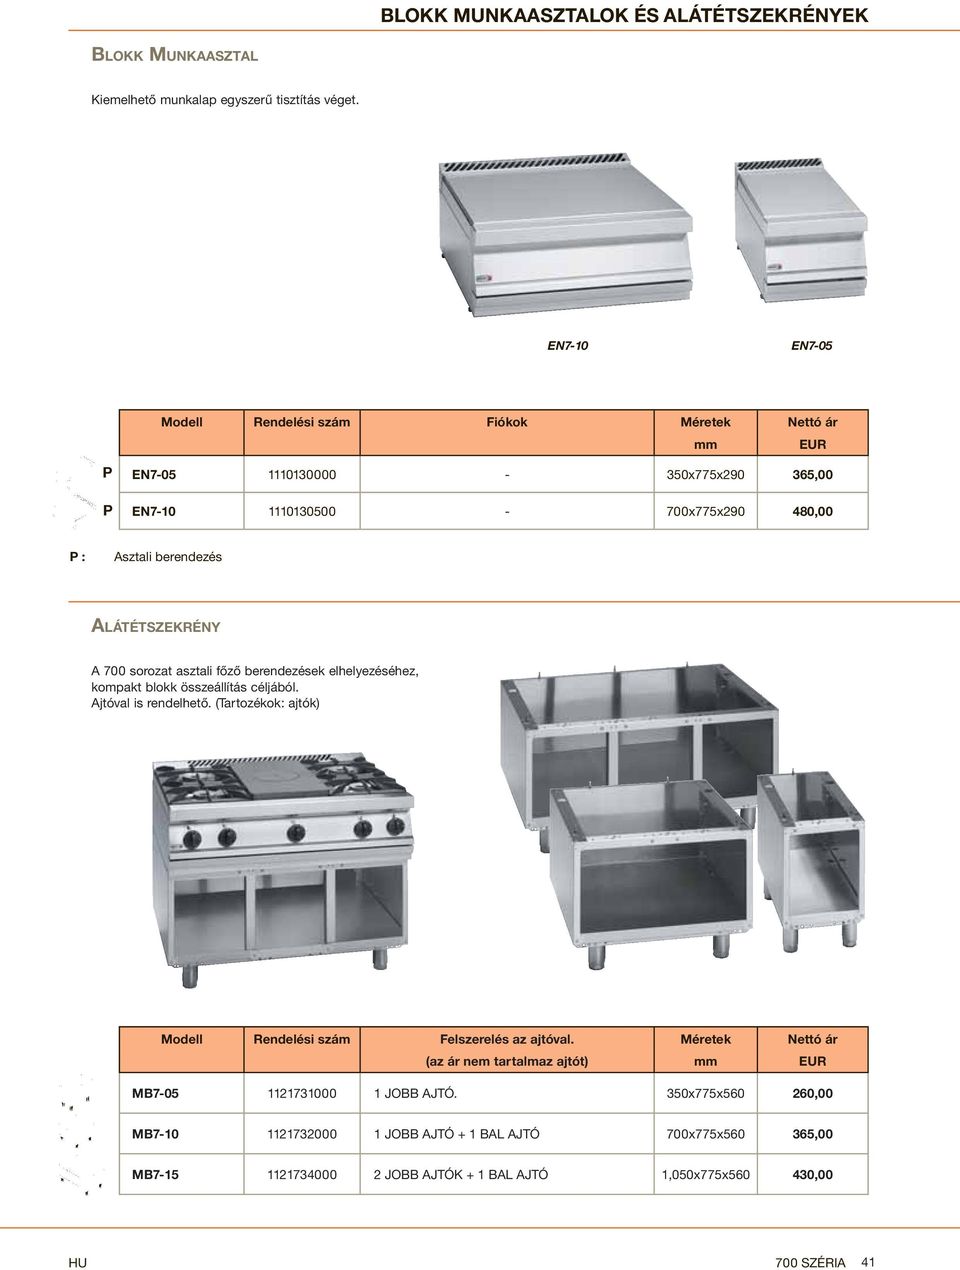 A 700 sorozat asztali főző berendezések elhelyezéséhez, kompakt blokk összeállítás céljából. Ajtóval is rendelhető.